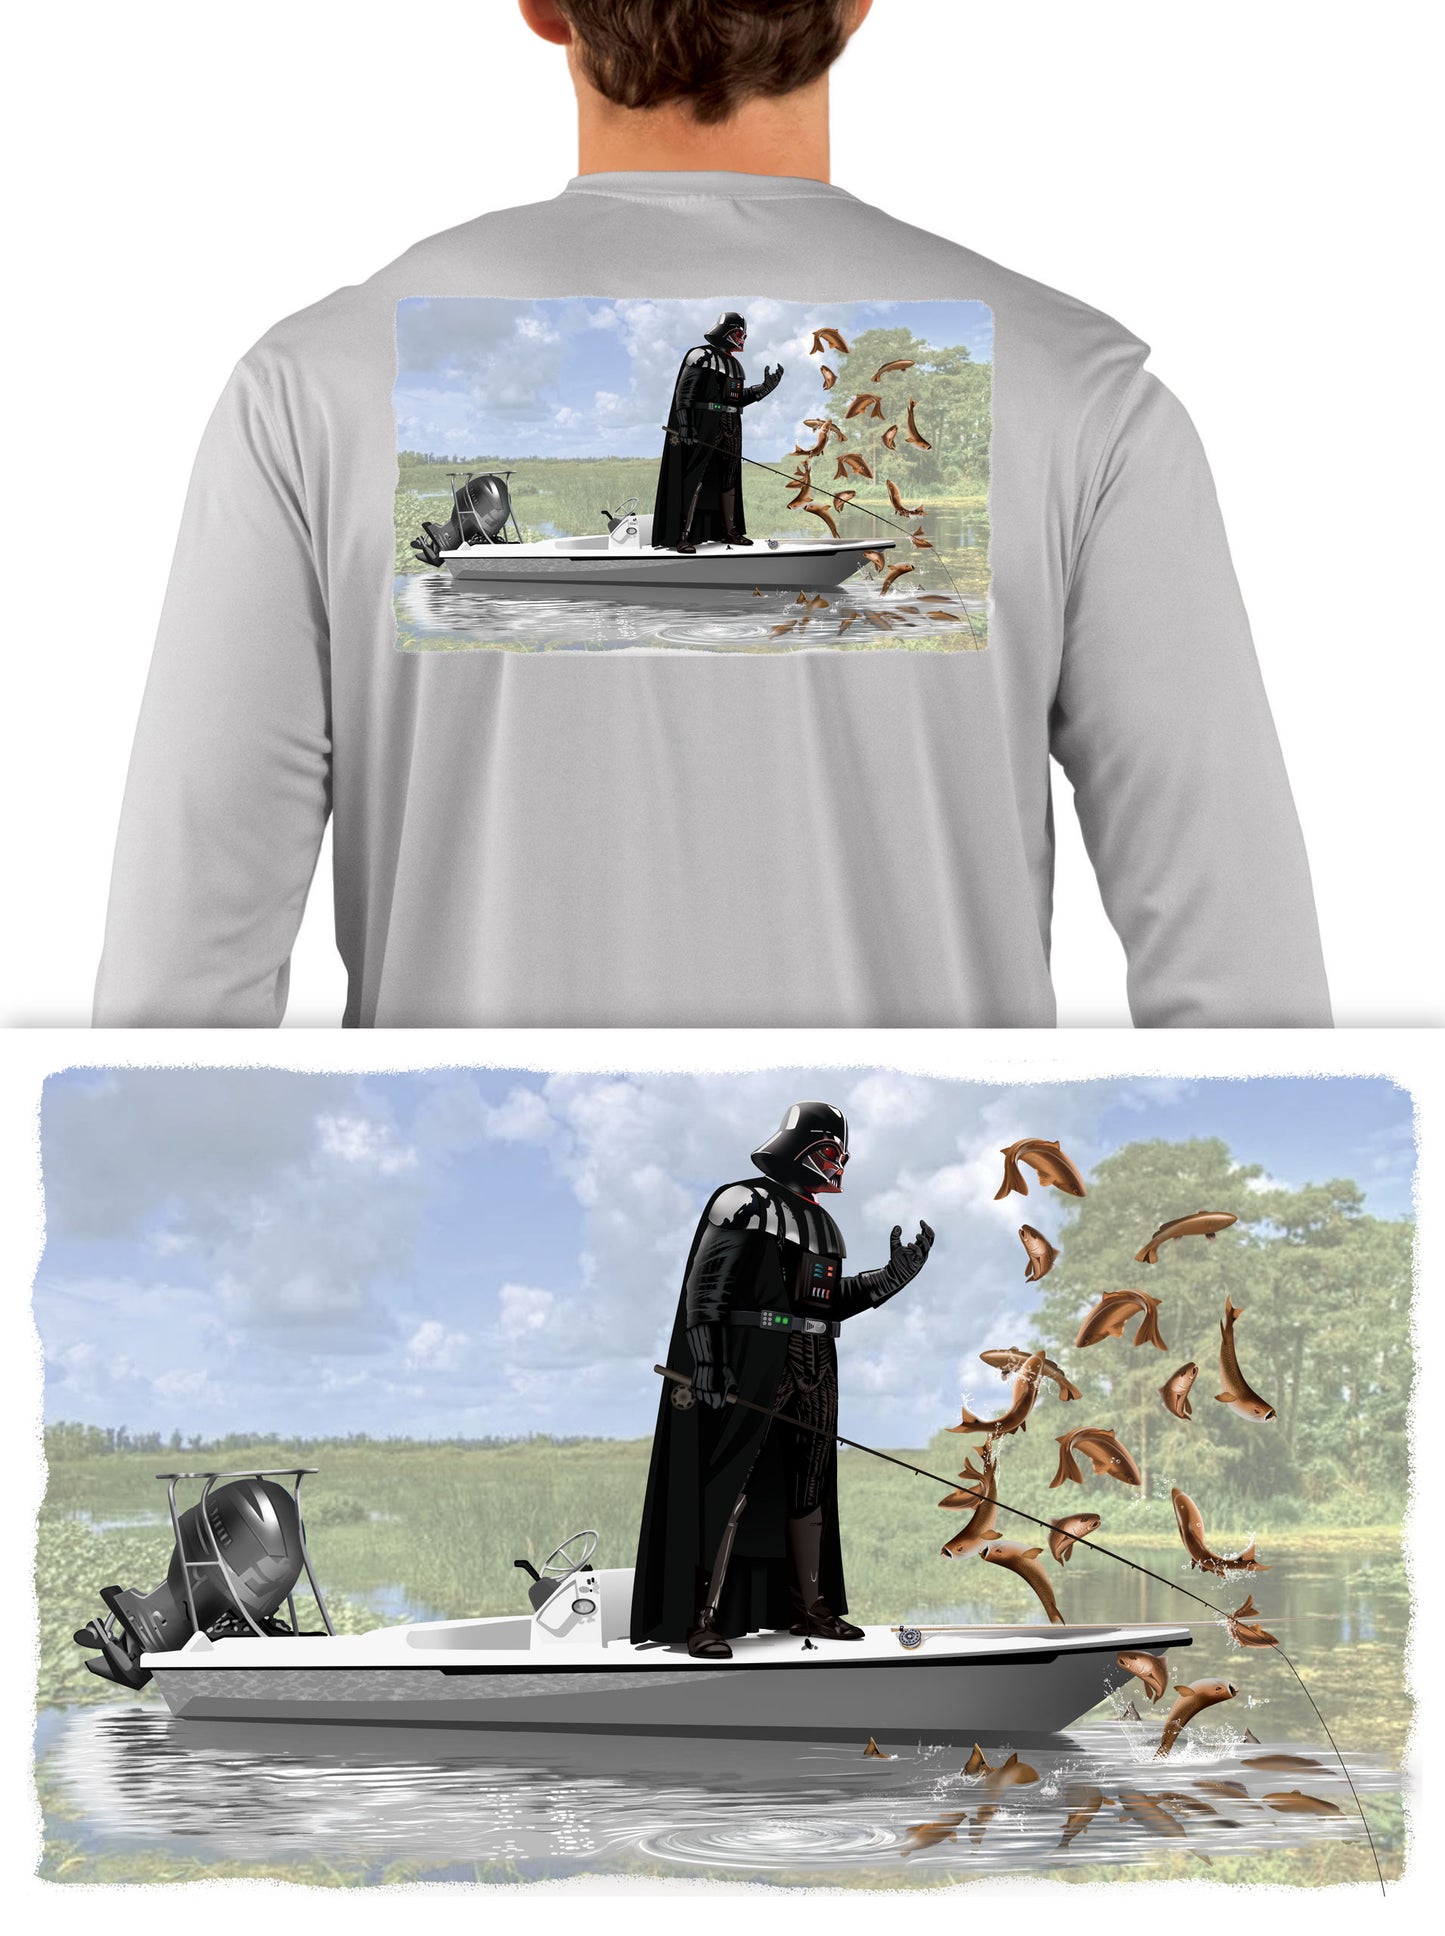 Darth Vader Force Fishing on Poling Skiff - Skiff Life